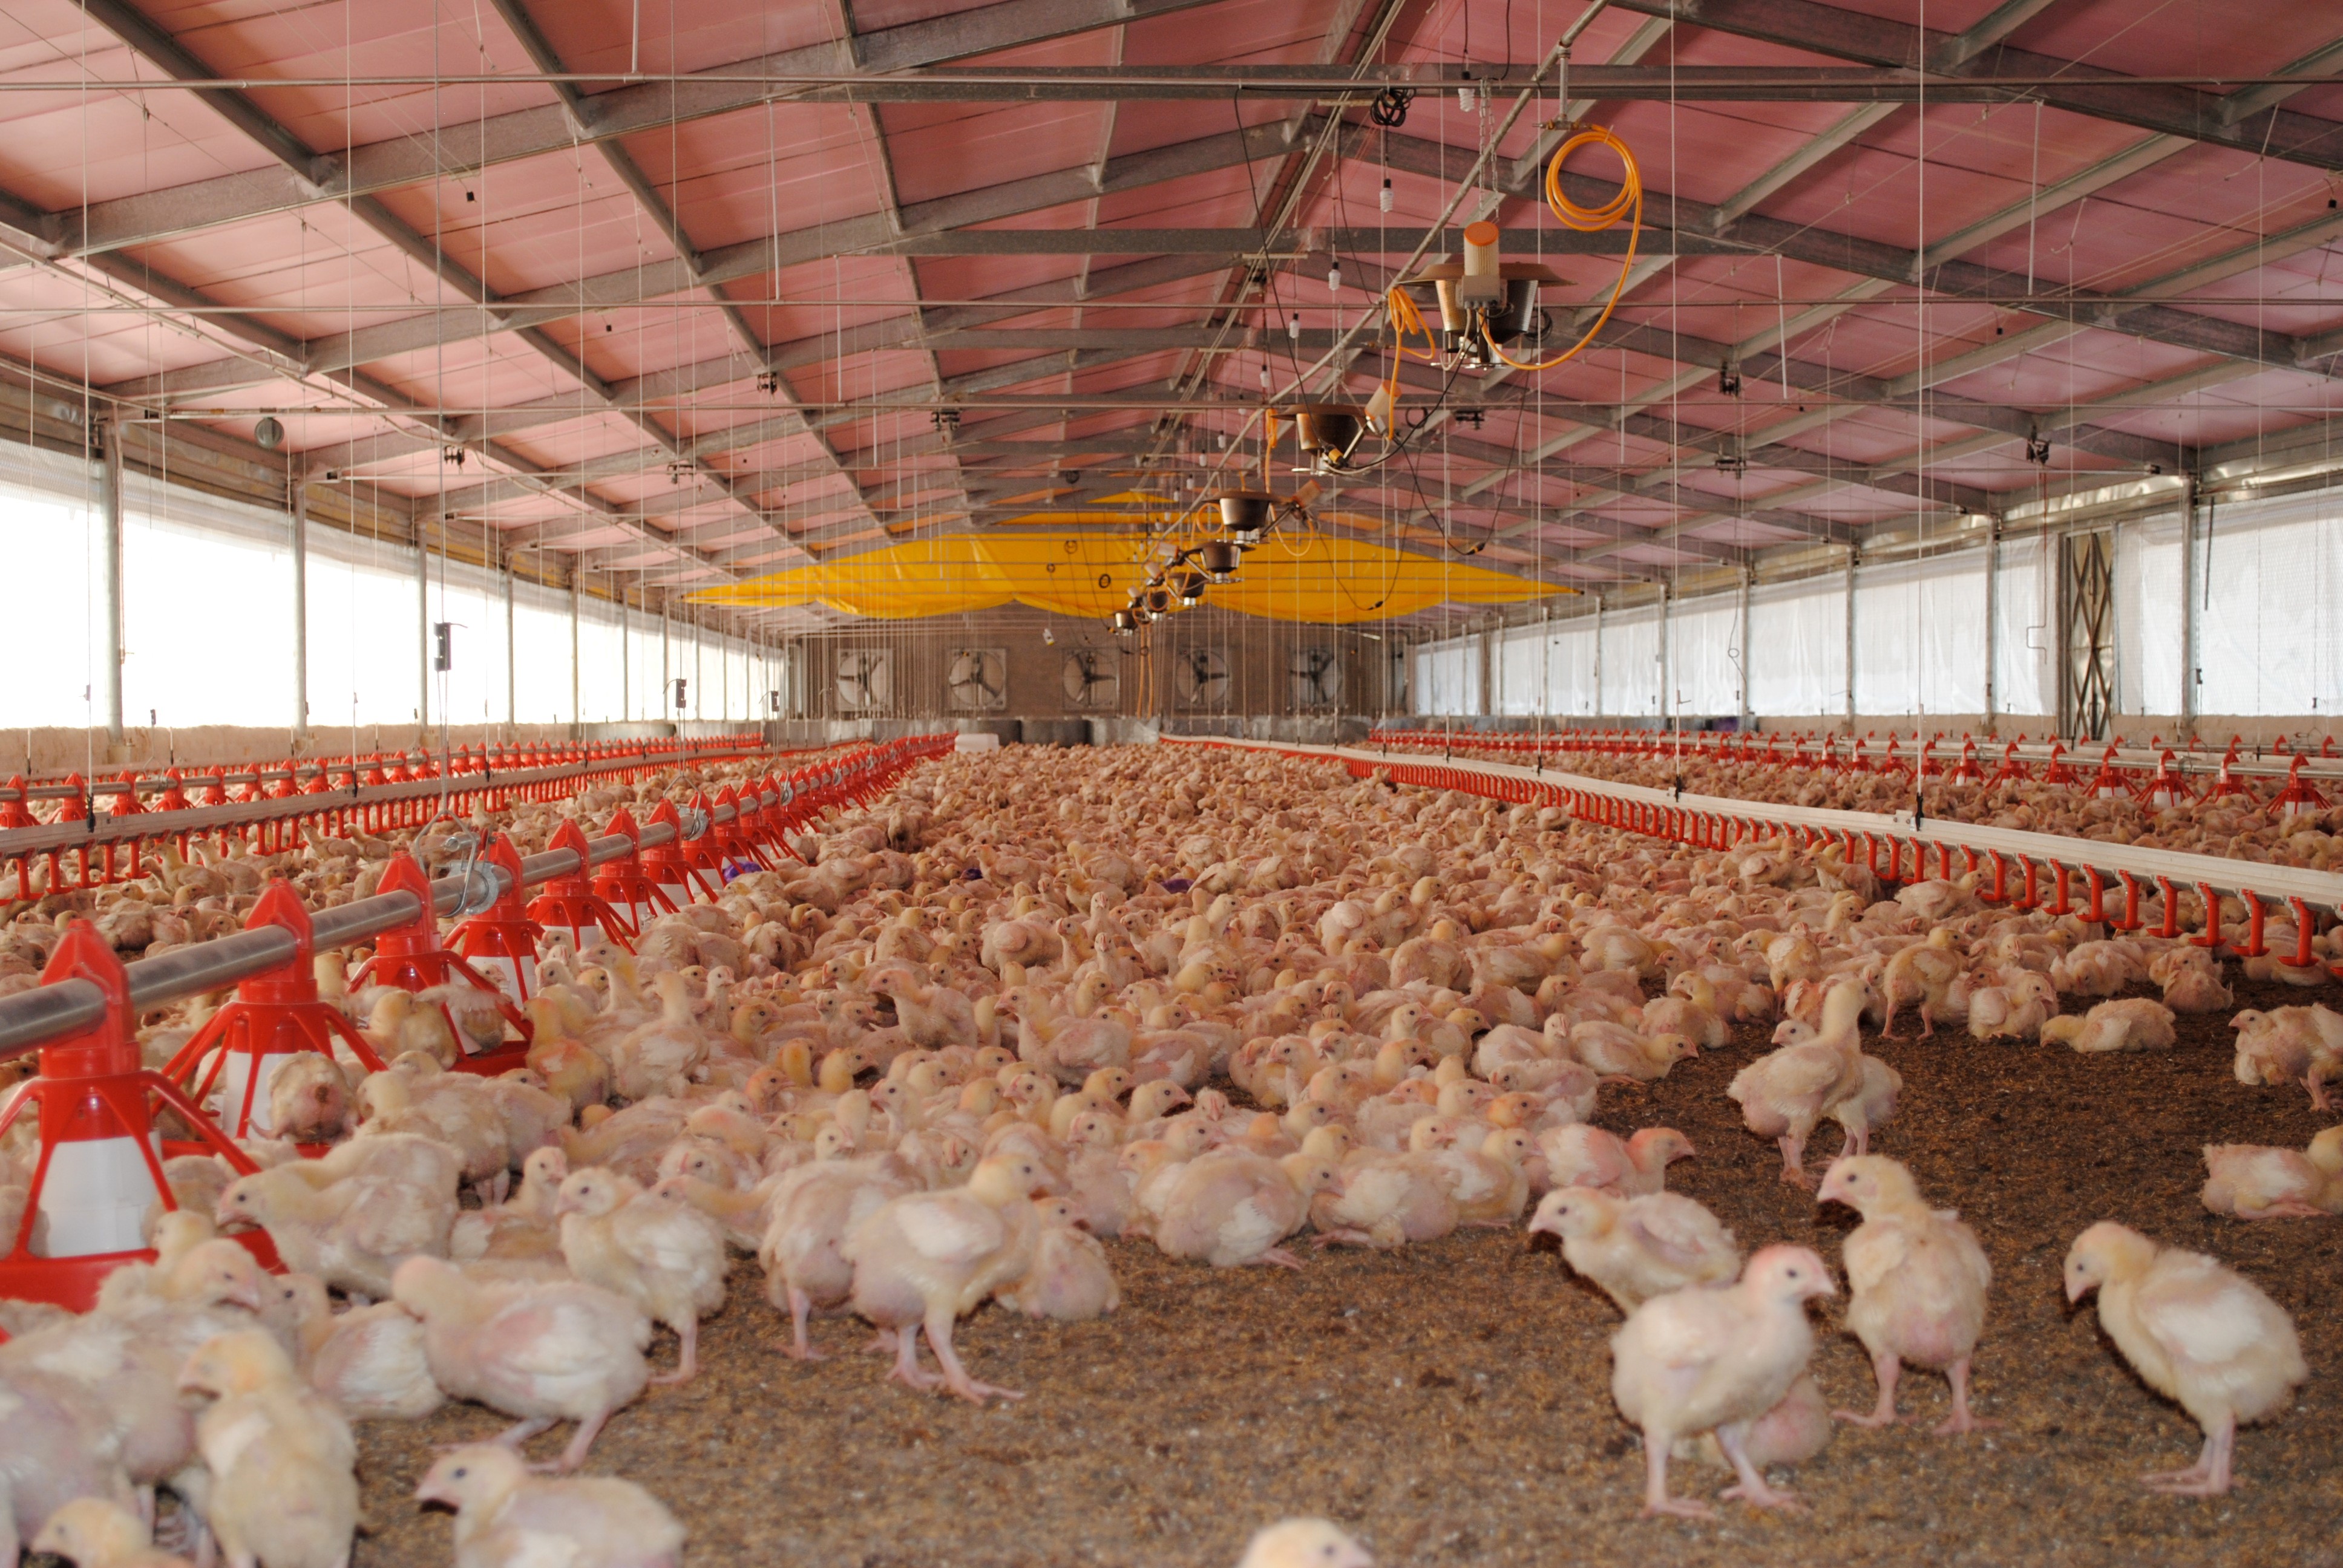 Riesgos en la avicultura nacional e impactos económicos en 
los costos de producción avícola por los brotes de influenza aviar H5N1, en México